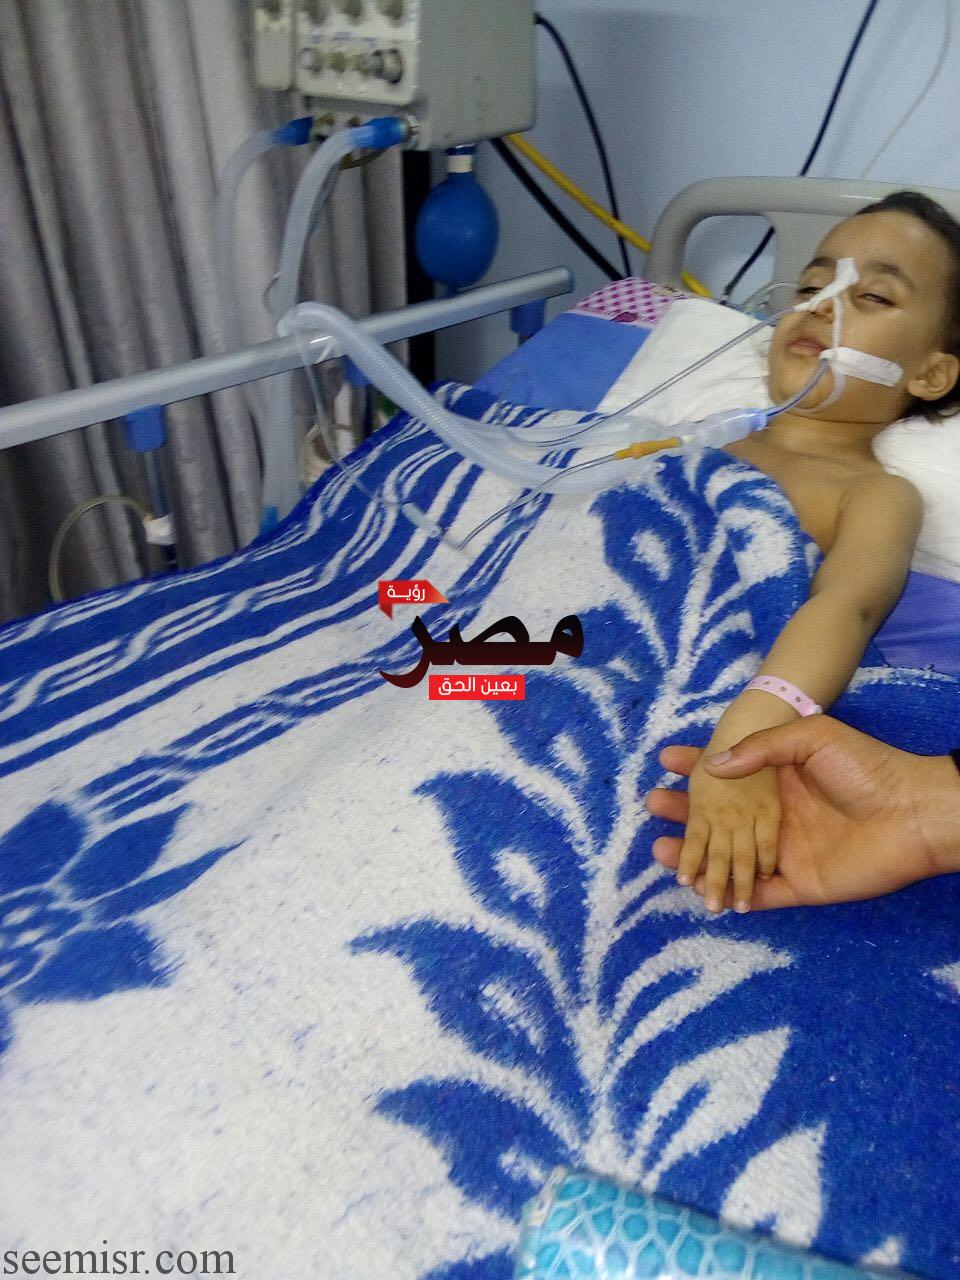 الطفل محمود ضحية الاهمال الطبي